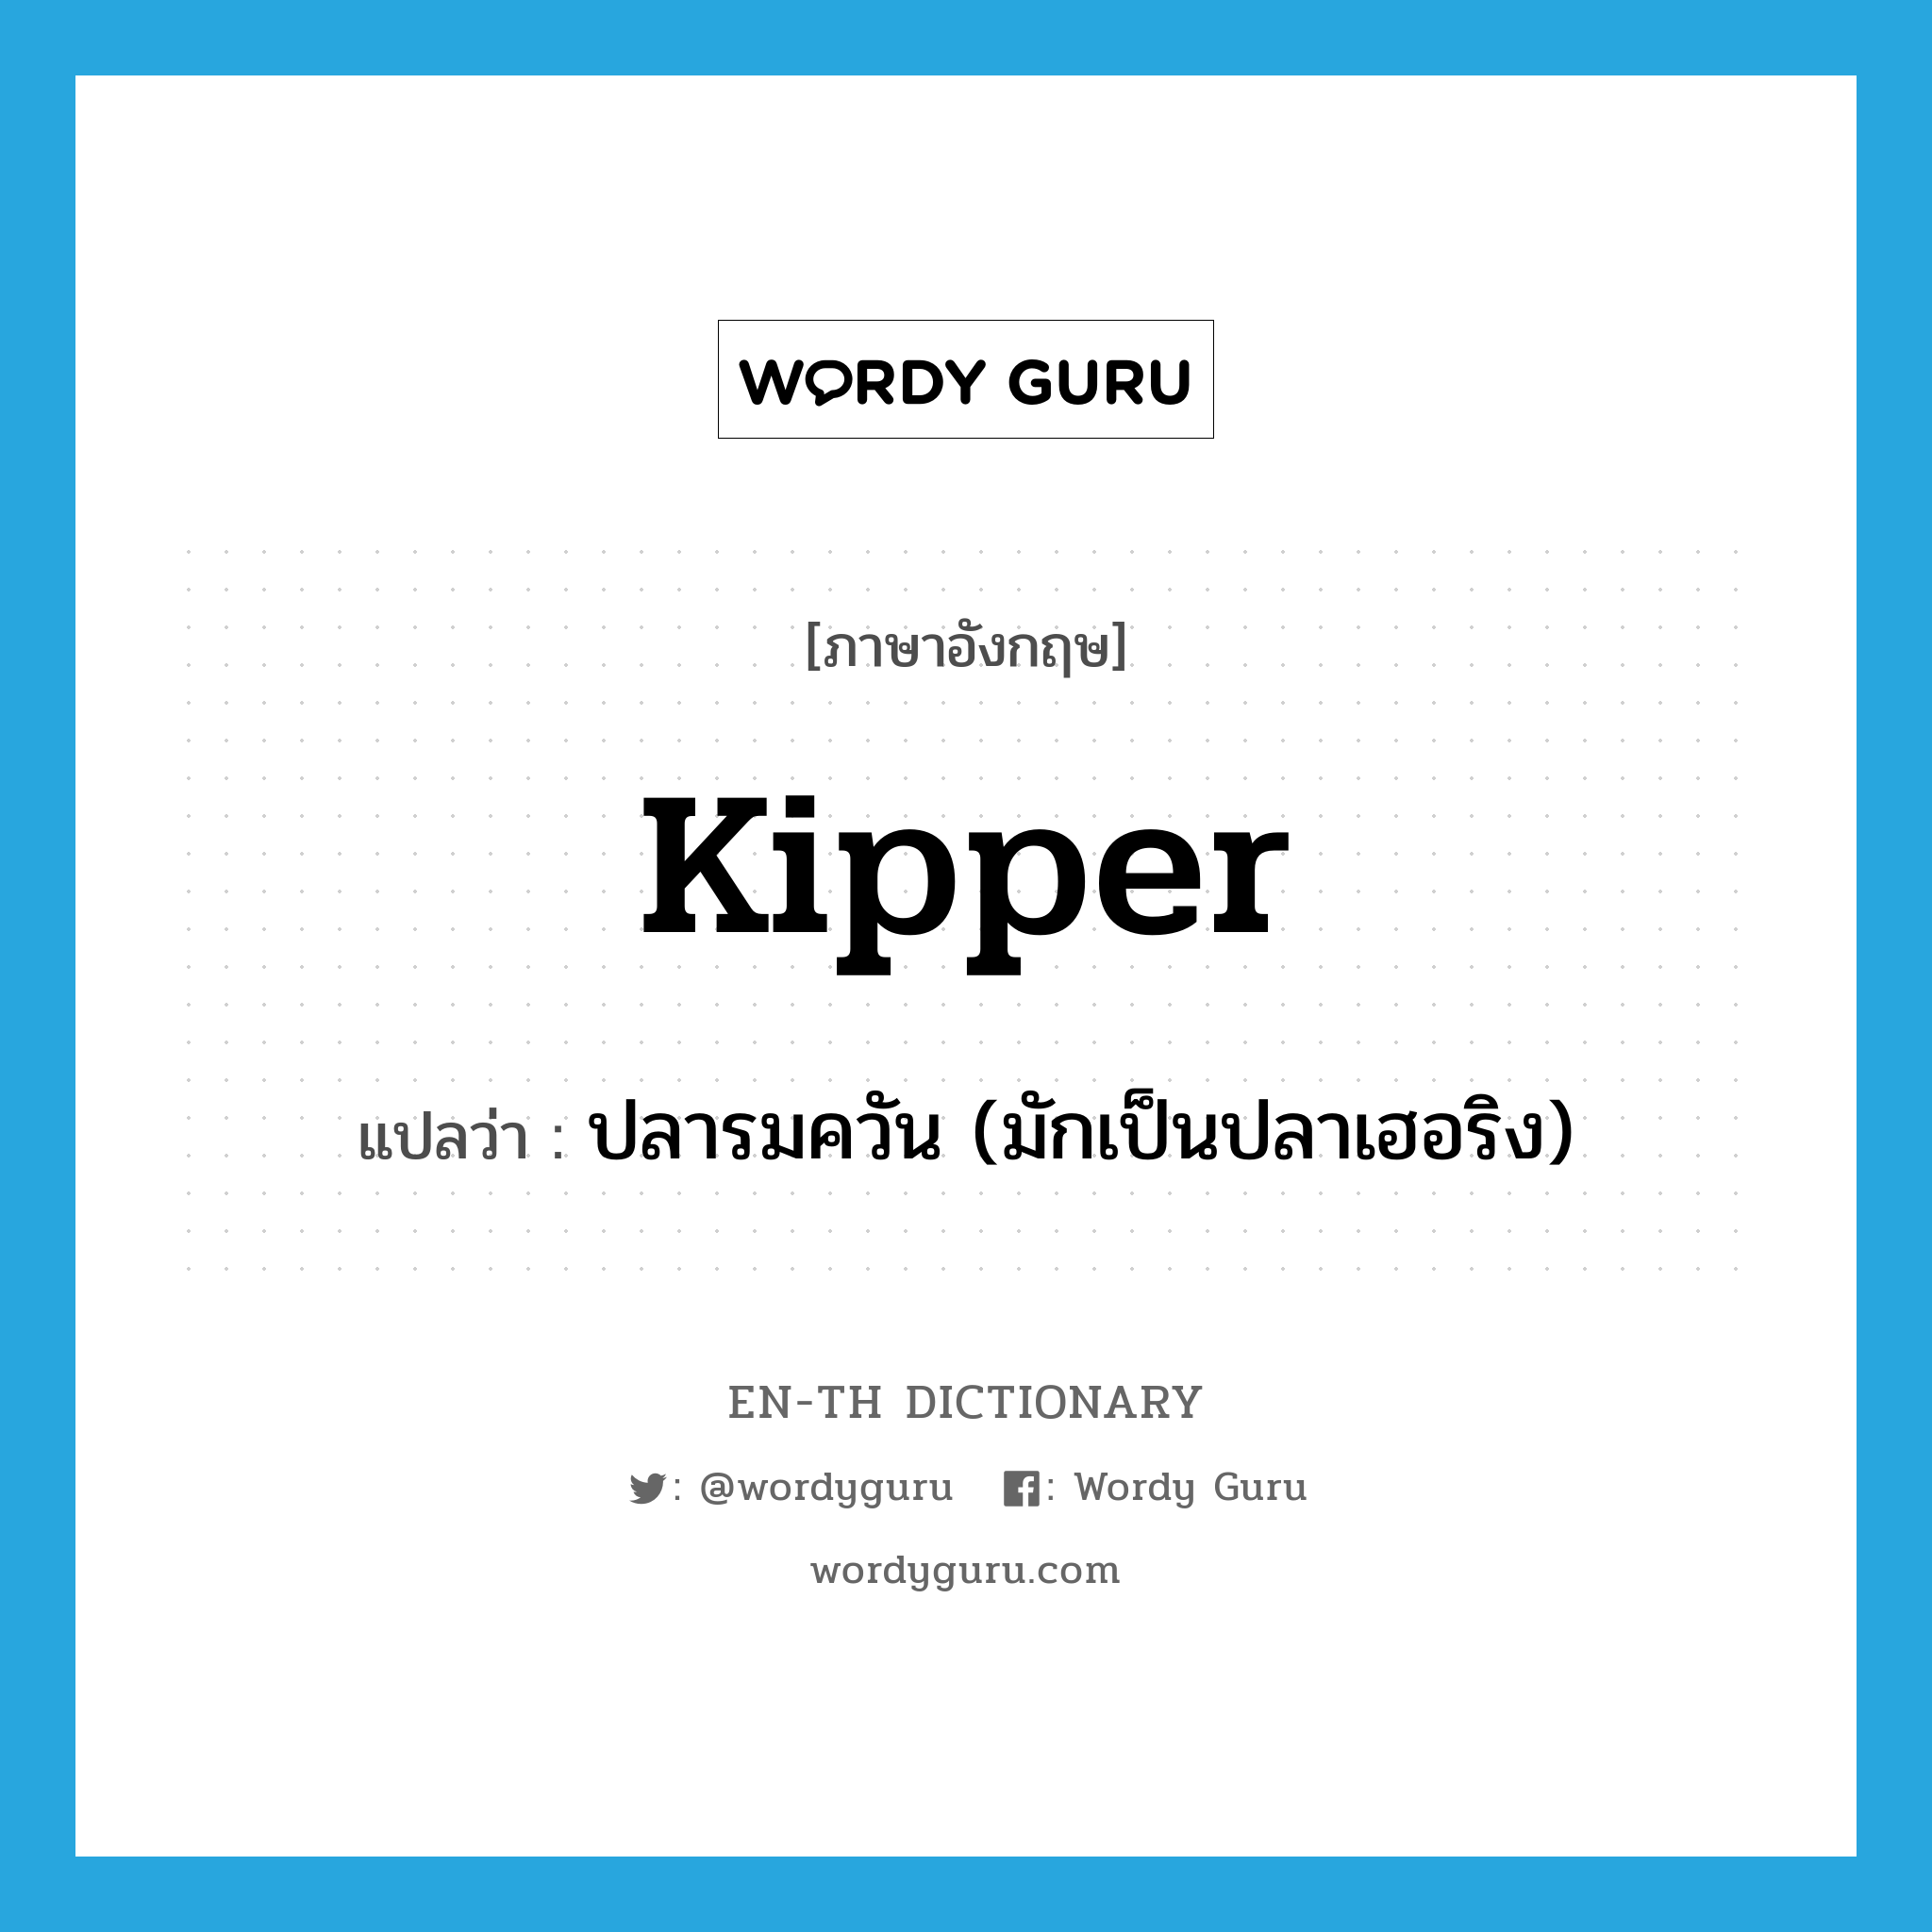 ปลารมควัน (มักเป็นปลาเฮอริง) ภาษาอังกฤษ?, คำศัพท์ภาษาอังกฤษ ปลารมควัน (มักเป็นปลาเฮอริง) แปลว่า kipper ประเภท N หมวด N